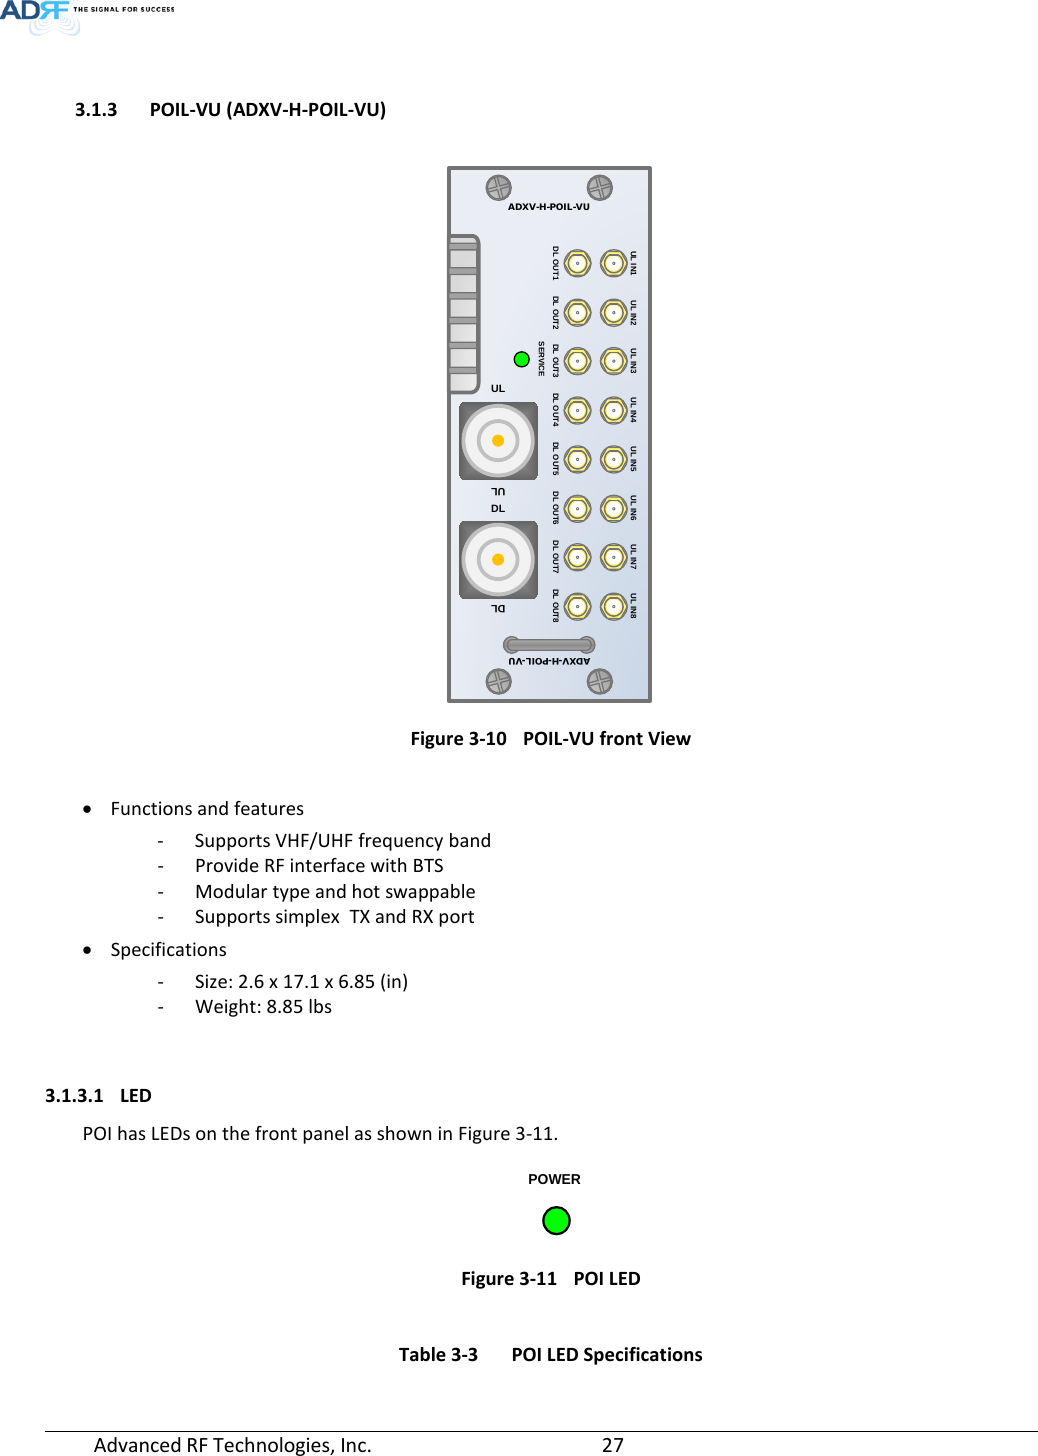 Page 27 of ADRF KOREA ADXV-R-25VUNA DAS (Distributed Antenna System) User Manual ADXV DAS